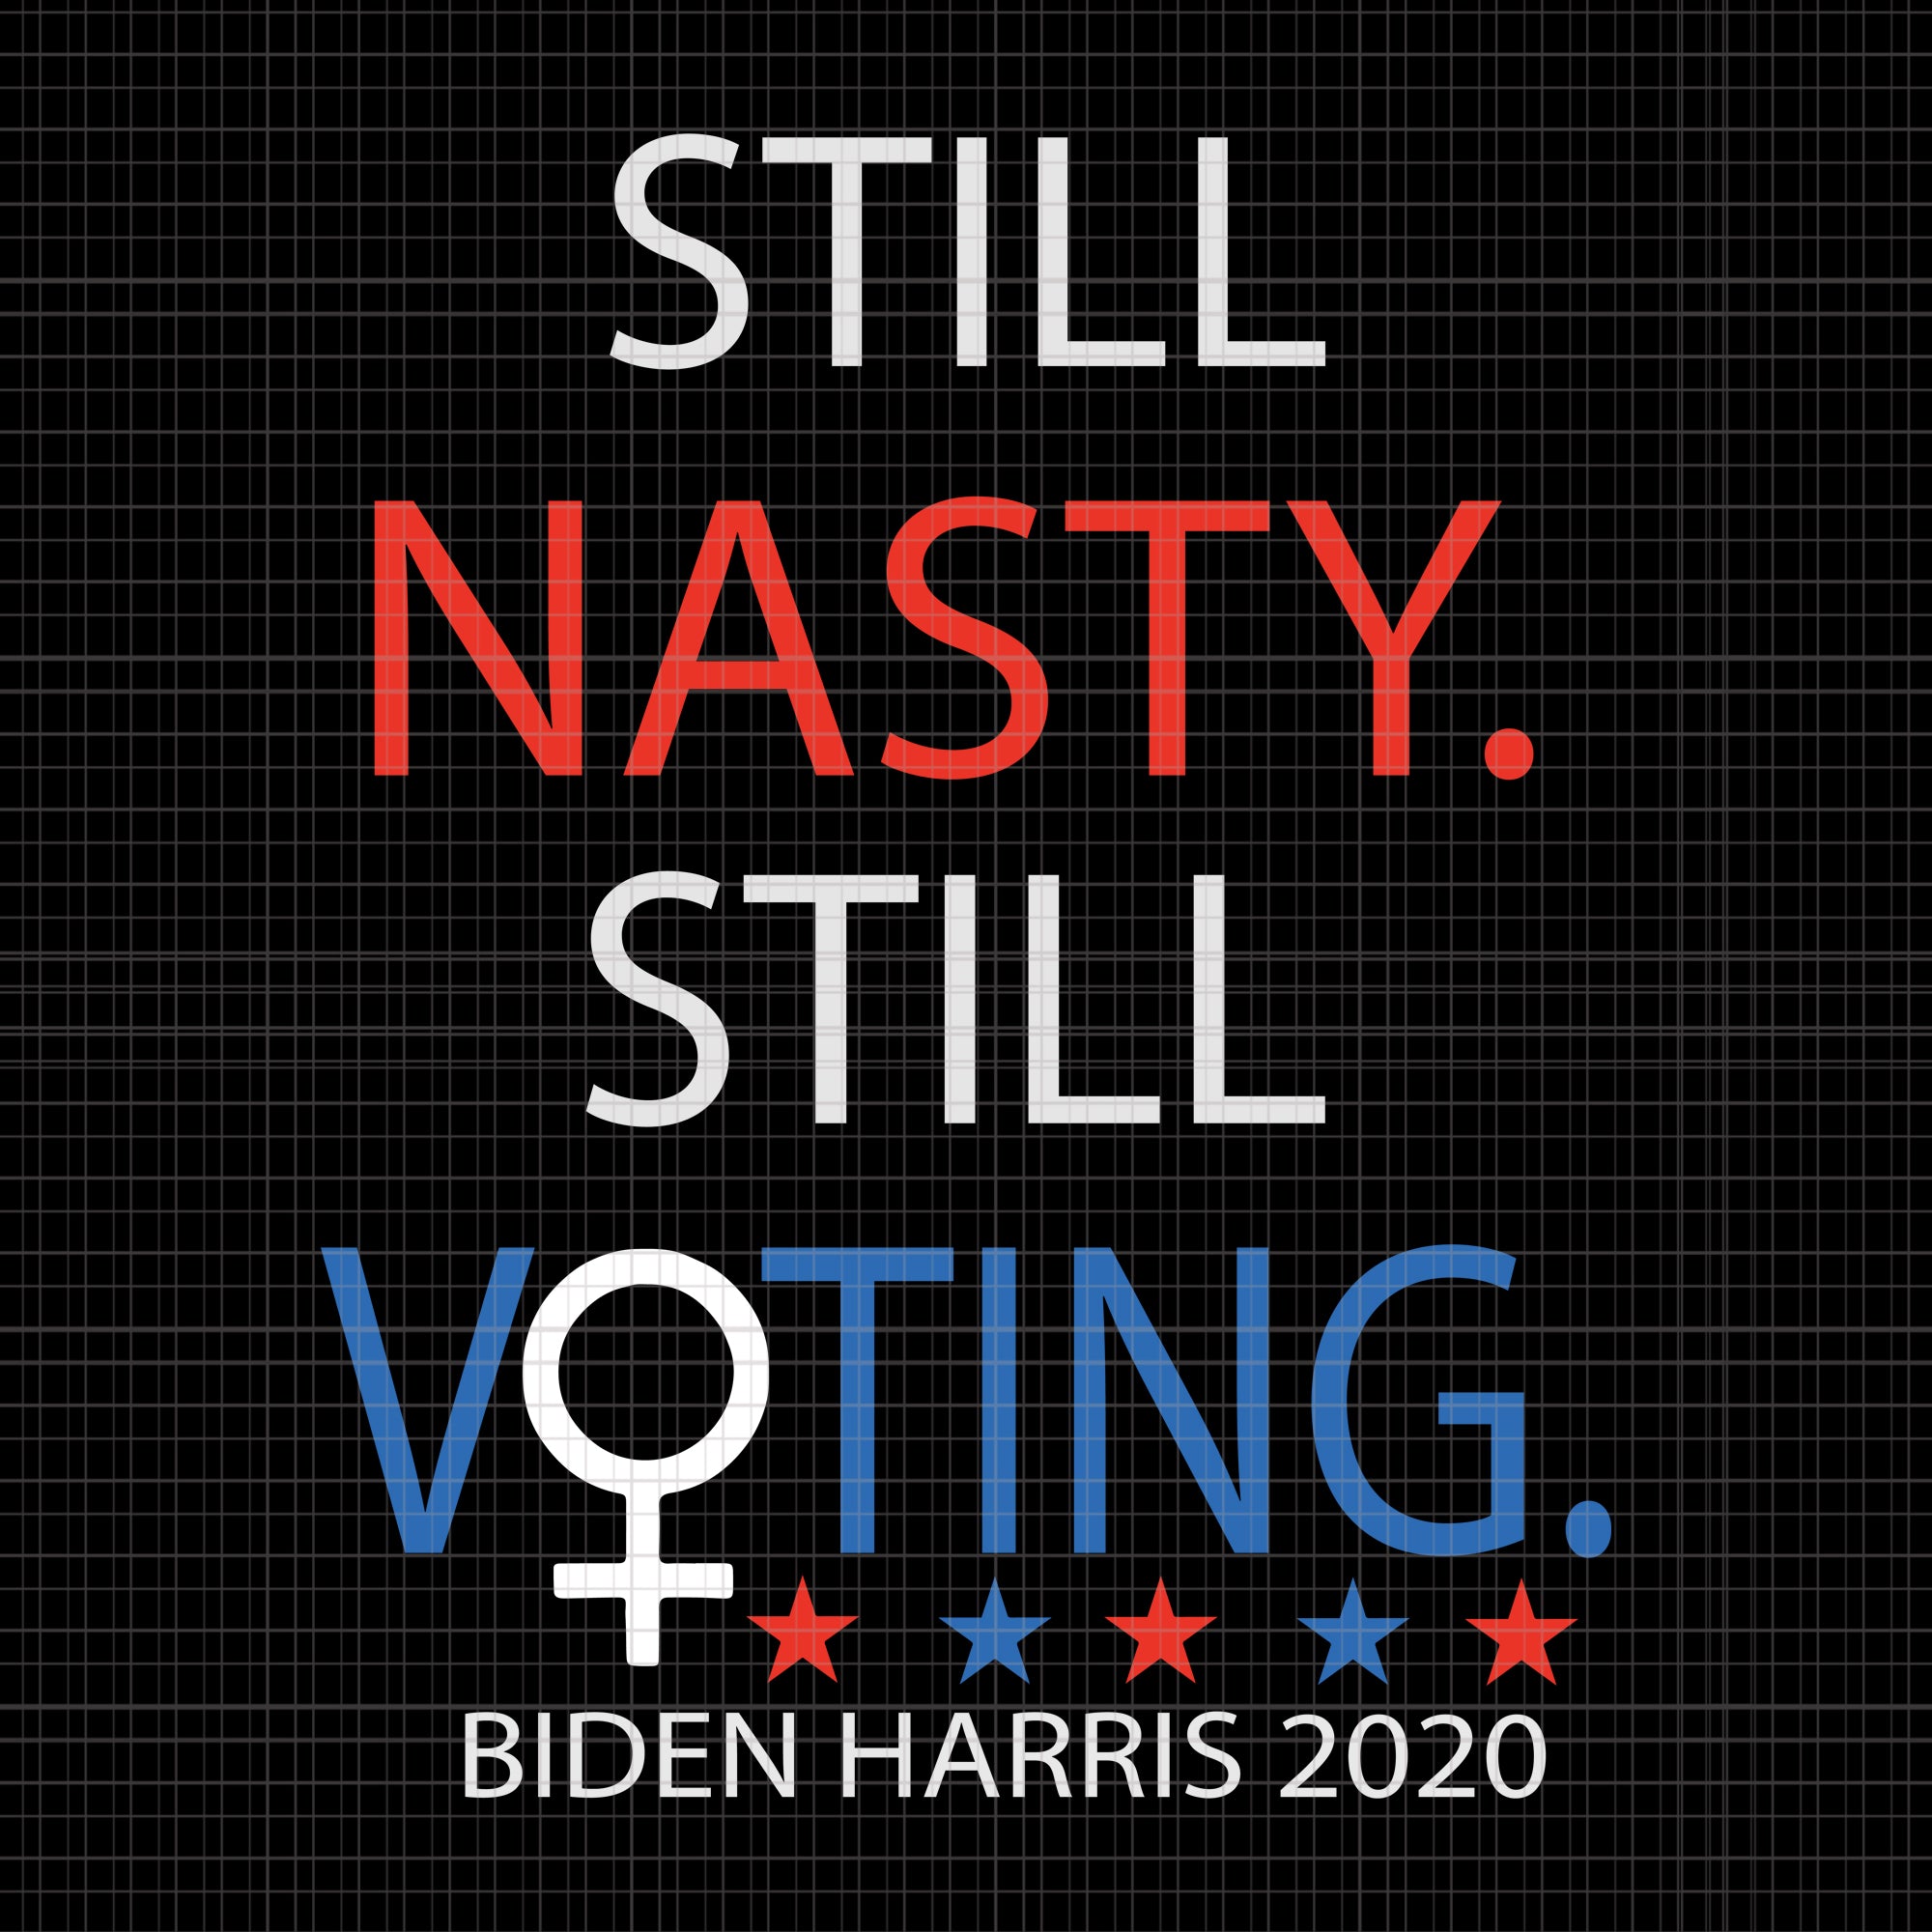 Nasty woman vote, This nasty woman votes biden harris 2020 , biden harris, biden harris 2020 png, biden harris svg, biden 2020, biden 2020 svg, joe biden, joe biden svg, biden for president svg, biden harris 2020, biden harris svg, kamala harris